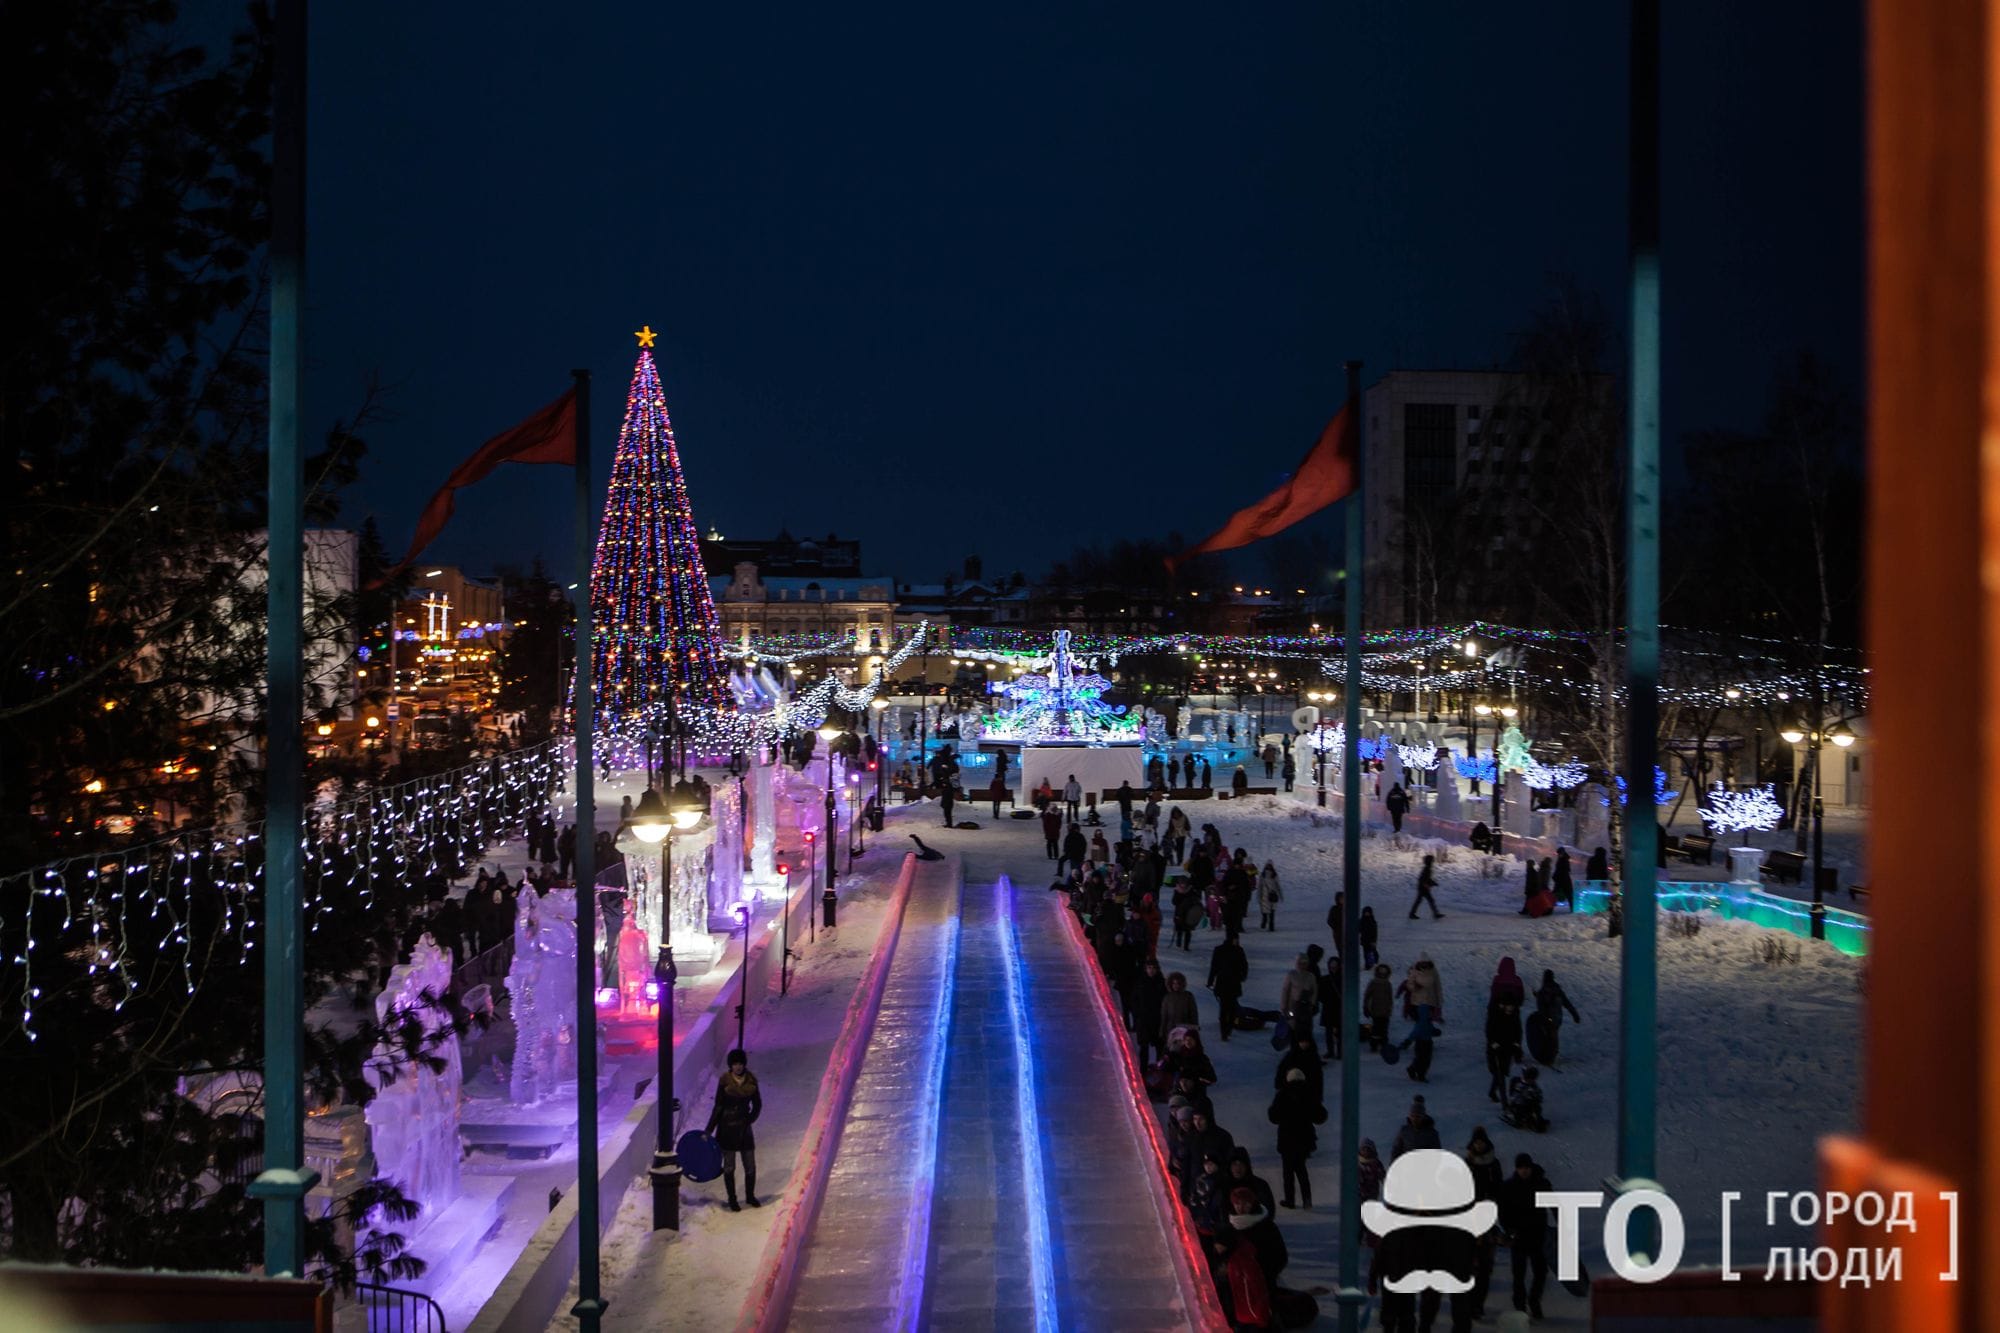 Новый год ❄, Томские новости, новый год праздник хрустальный томск скульптуры награждение В Томске открыли главную городскую елку и выбрали лучшую ледовую скульптуру